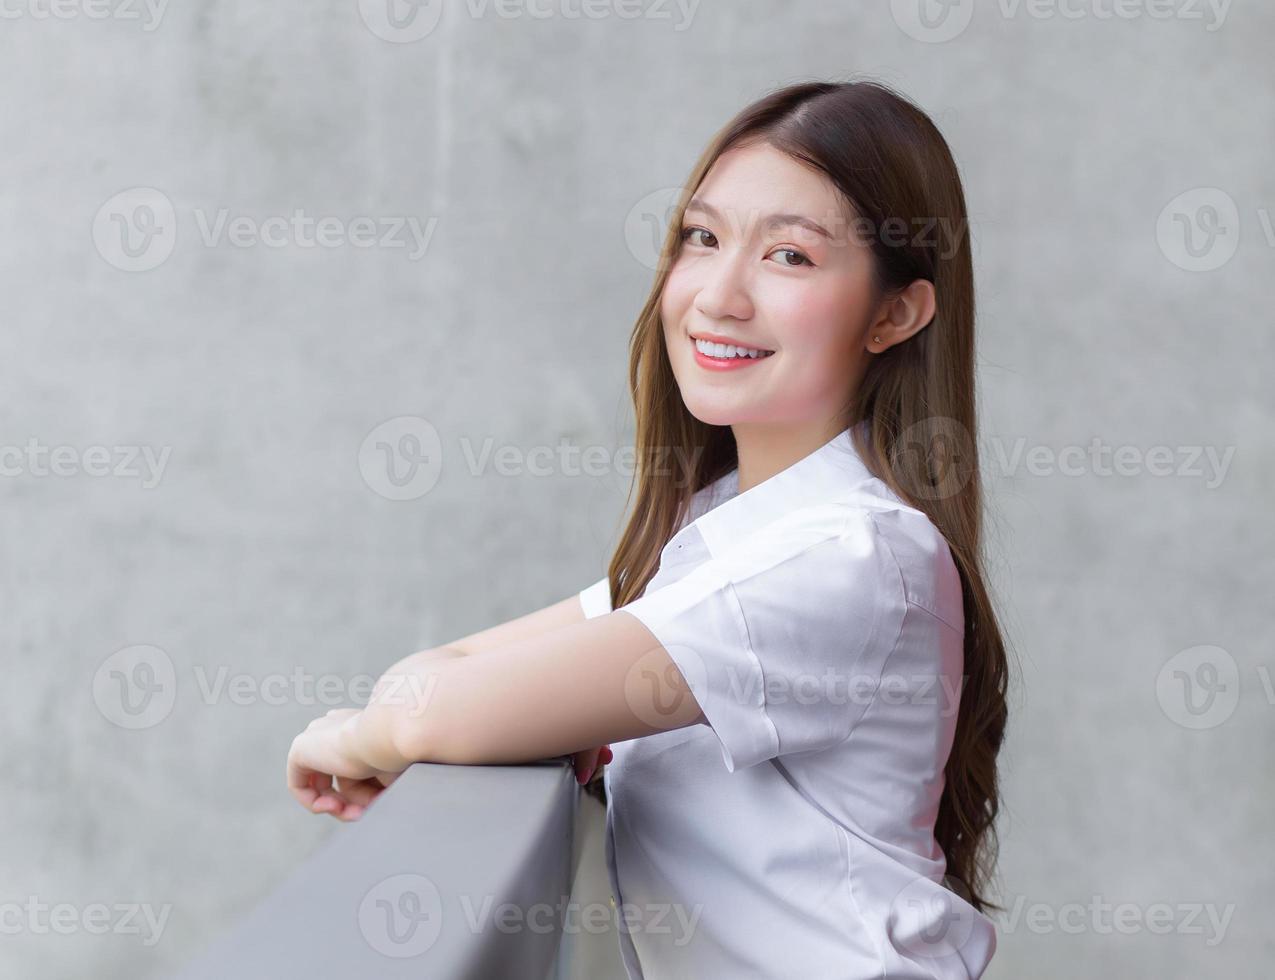 retrato de un estudiante tailandés adulto con uniforme de estudiante universitario. hermosa chica asiática sentada sonriendo felizmente en la universidad foto